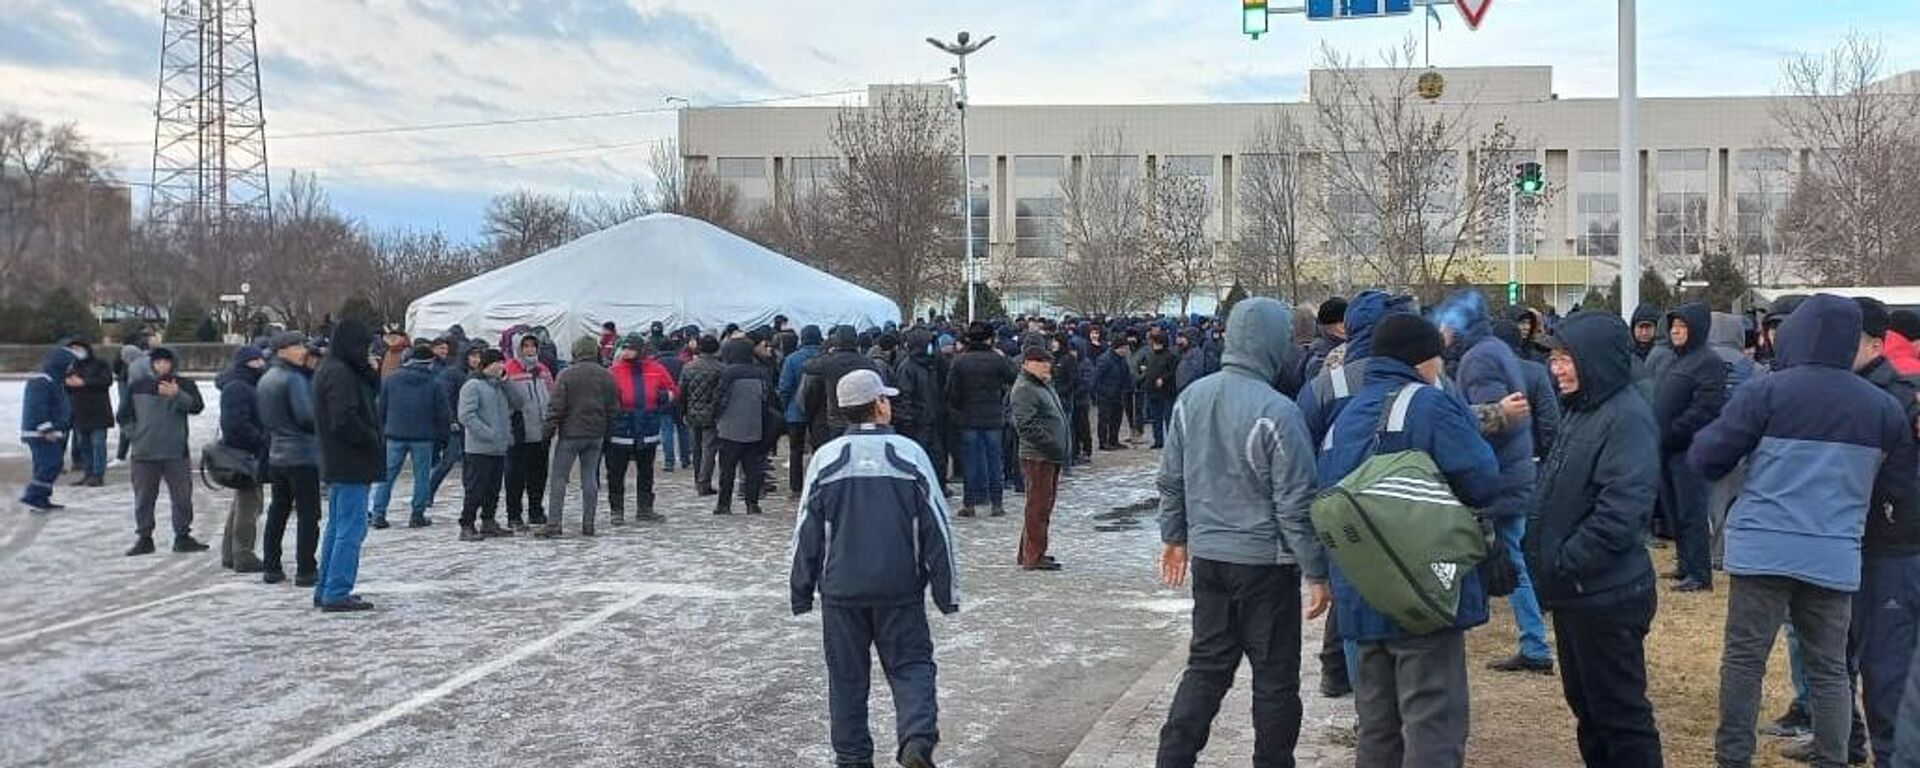 Protests in Aktau, Kazakhstan after the gas price hike. - Sputnik International, 1920, 05.01.2022